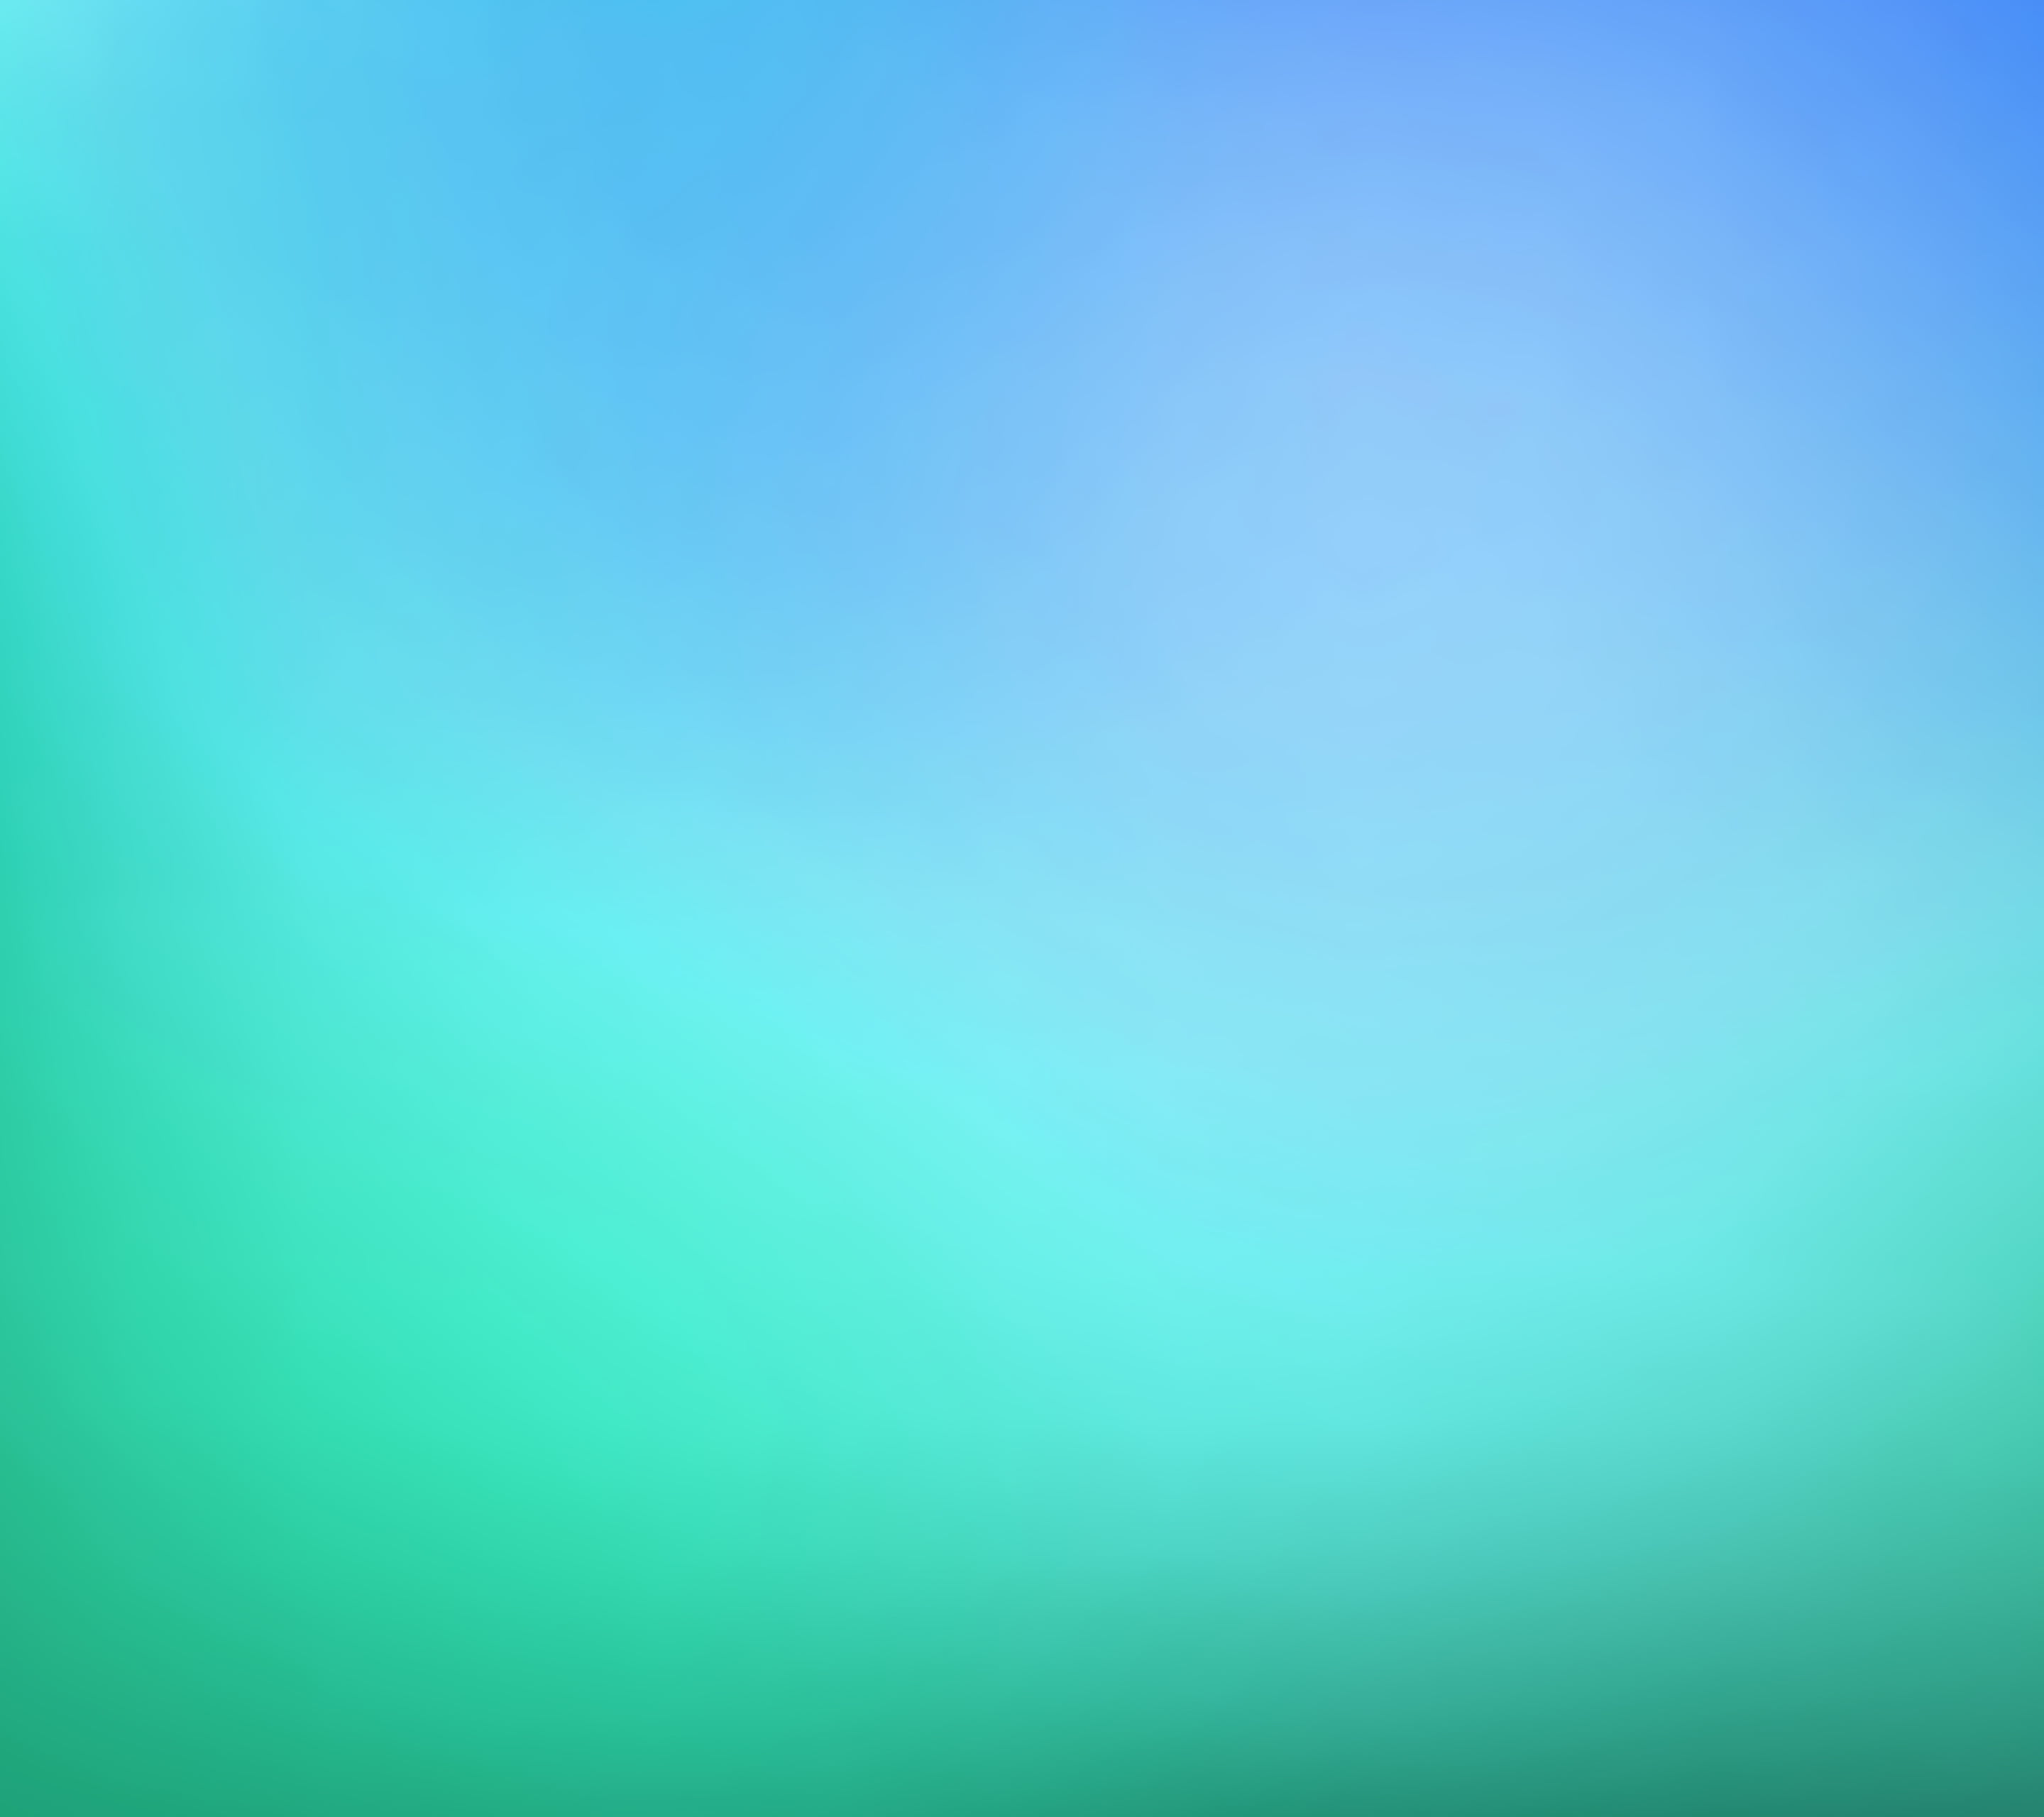 Hình nền Gradient xanh lục và xanh lam độ phân giải 800x600 pixel: Trang trí màn hình của bạn với hình nền Gradient xanh lục và xanh lam đẹp mắt. Điều này sẽ khiến cho màn hình của bạn trở nên sinh động hơn và cho các nhân viên của bạn cảm giác mới mẻ và sáng tạo hơn.